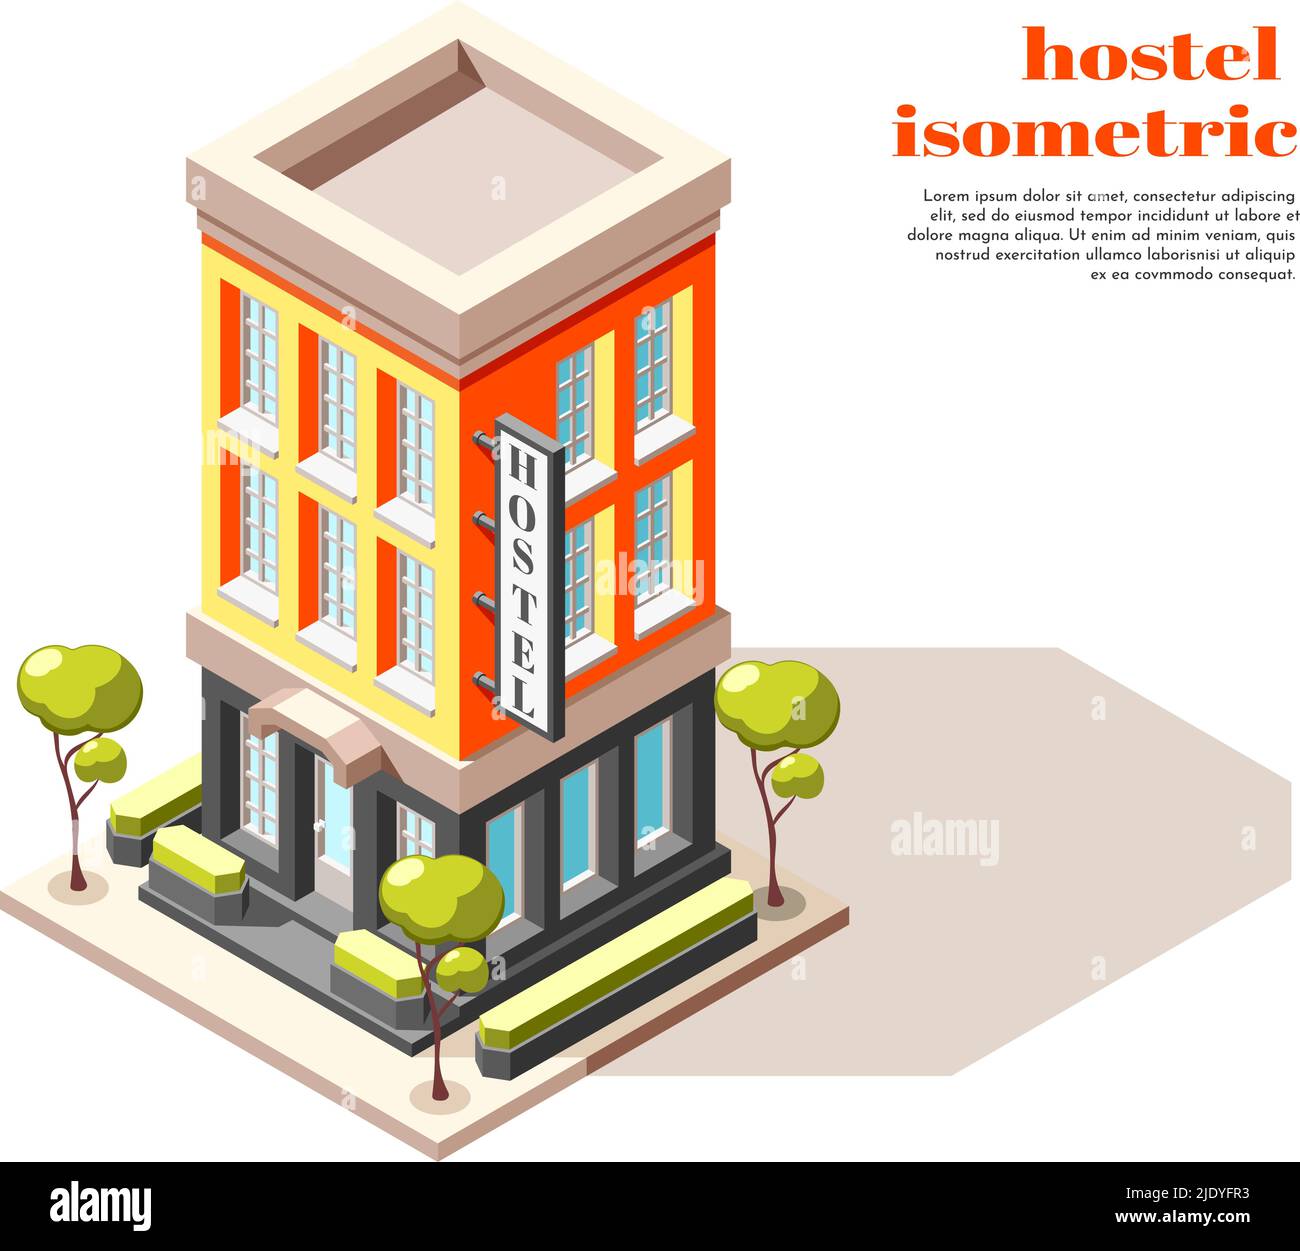 Hostel isometrische Zusammensetzung der modernen mehrstöckigen Gebäude mit Schild Bäume und Stadt Infrastruktur Vektor Illustration Stock Vektor